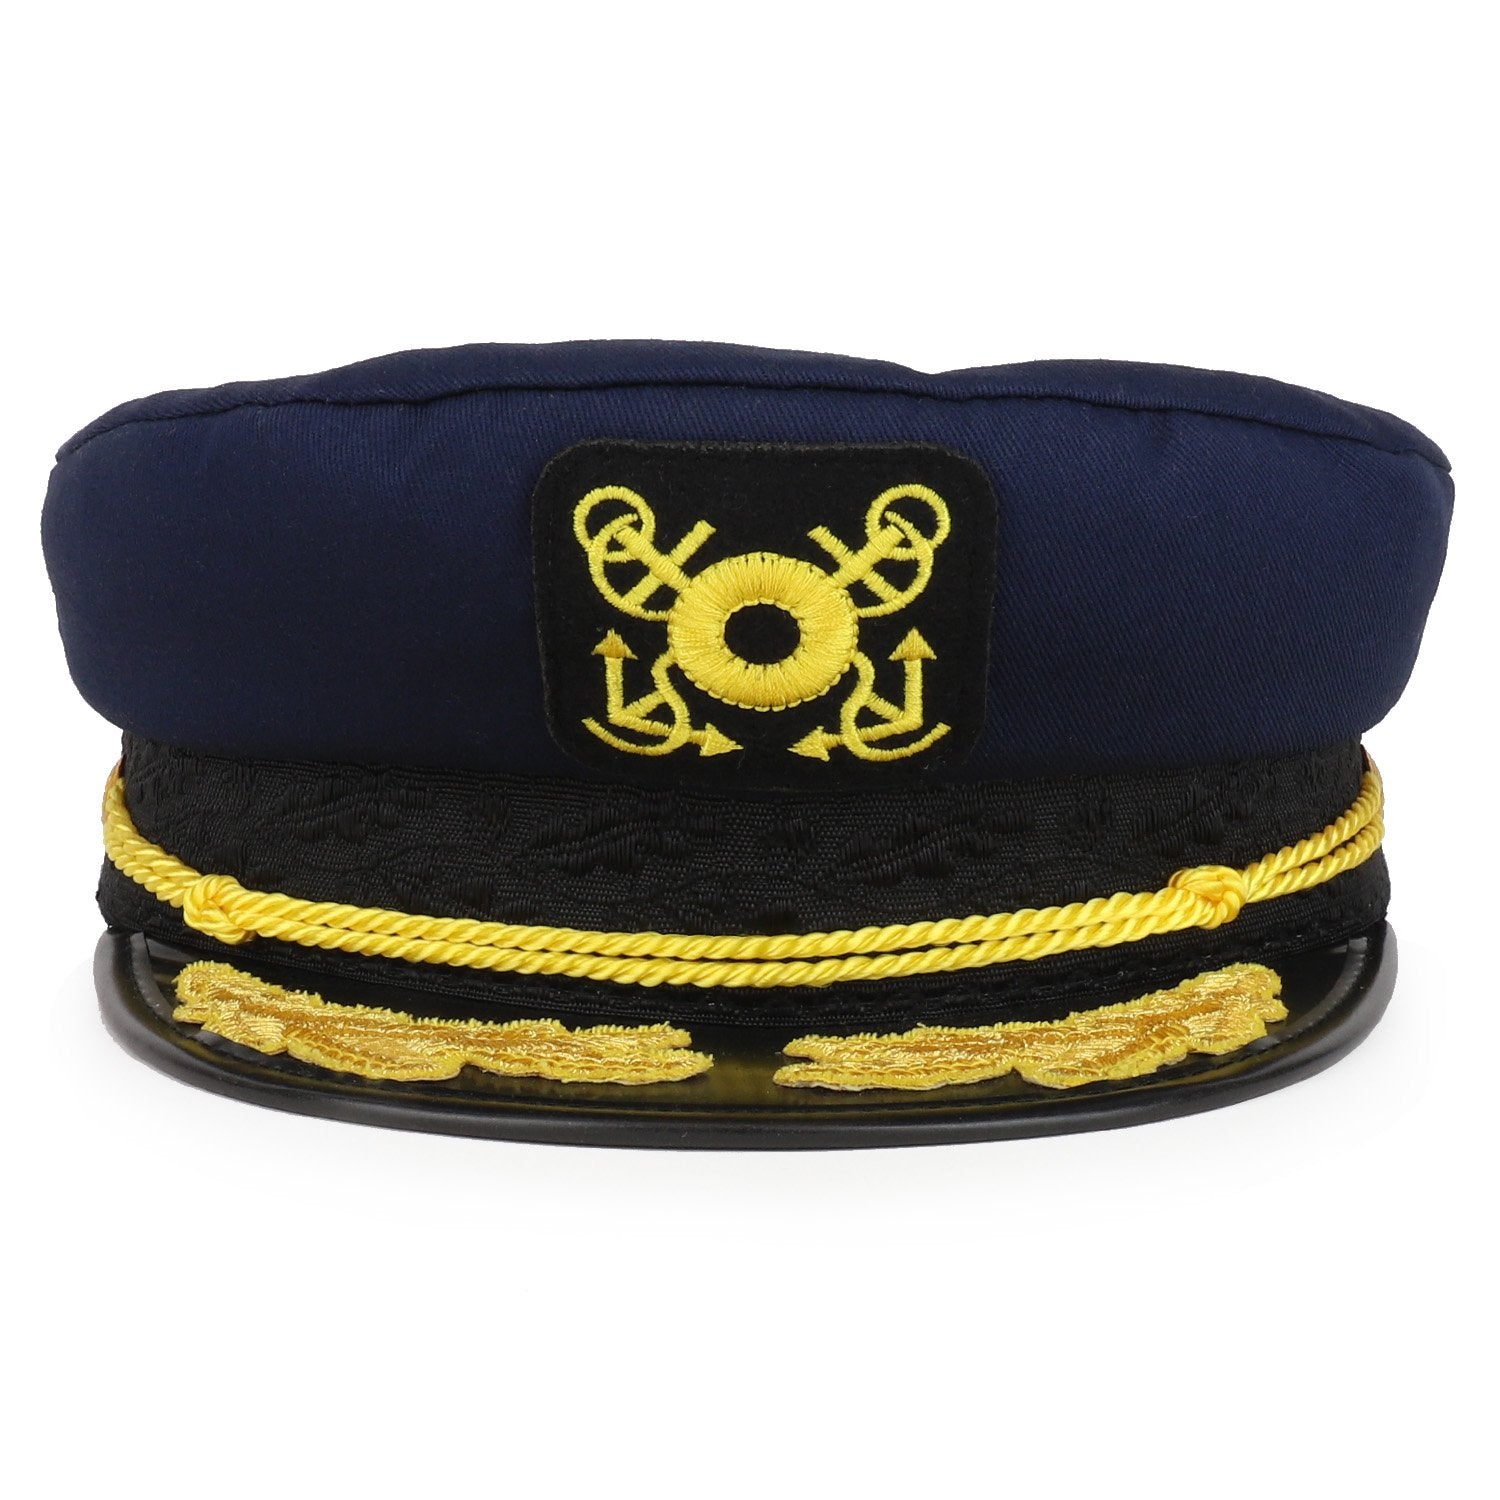 Armycrew Cotton Yacht Flagship Oak Leaf Captain Costume Sailor Hat